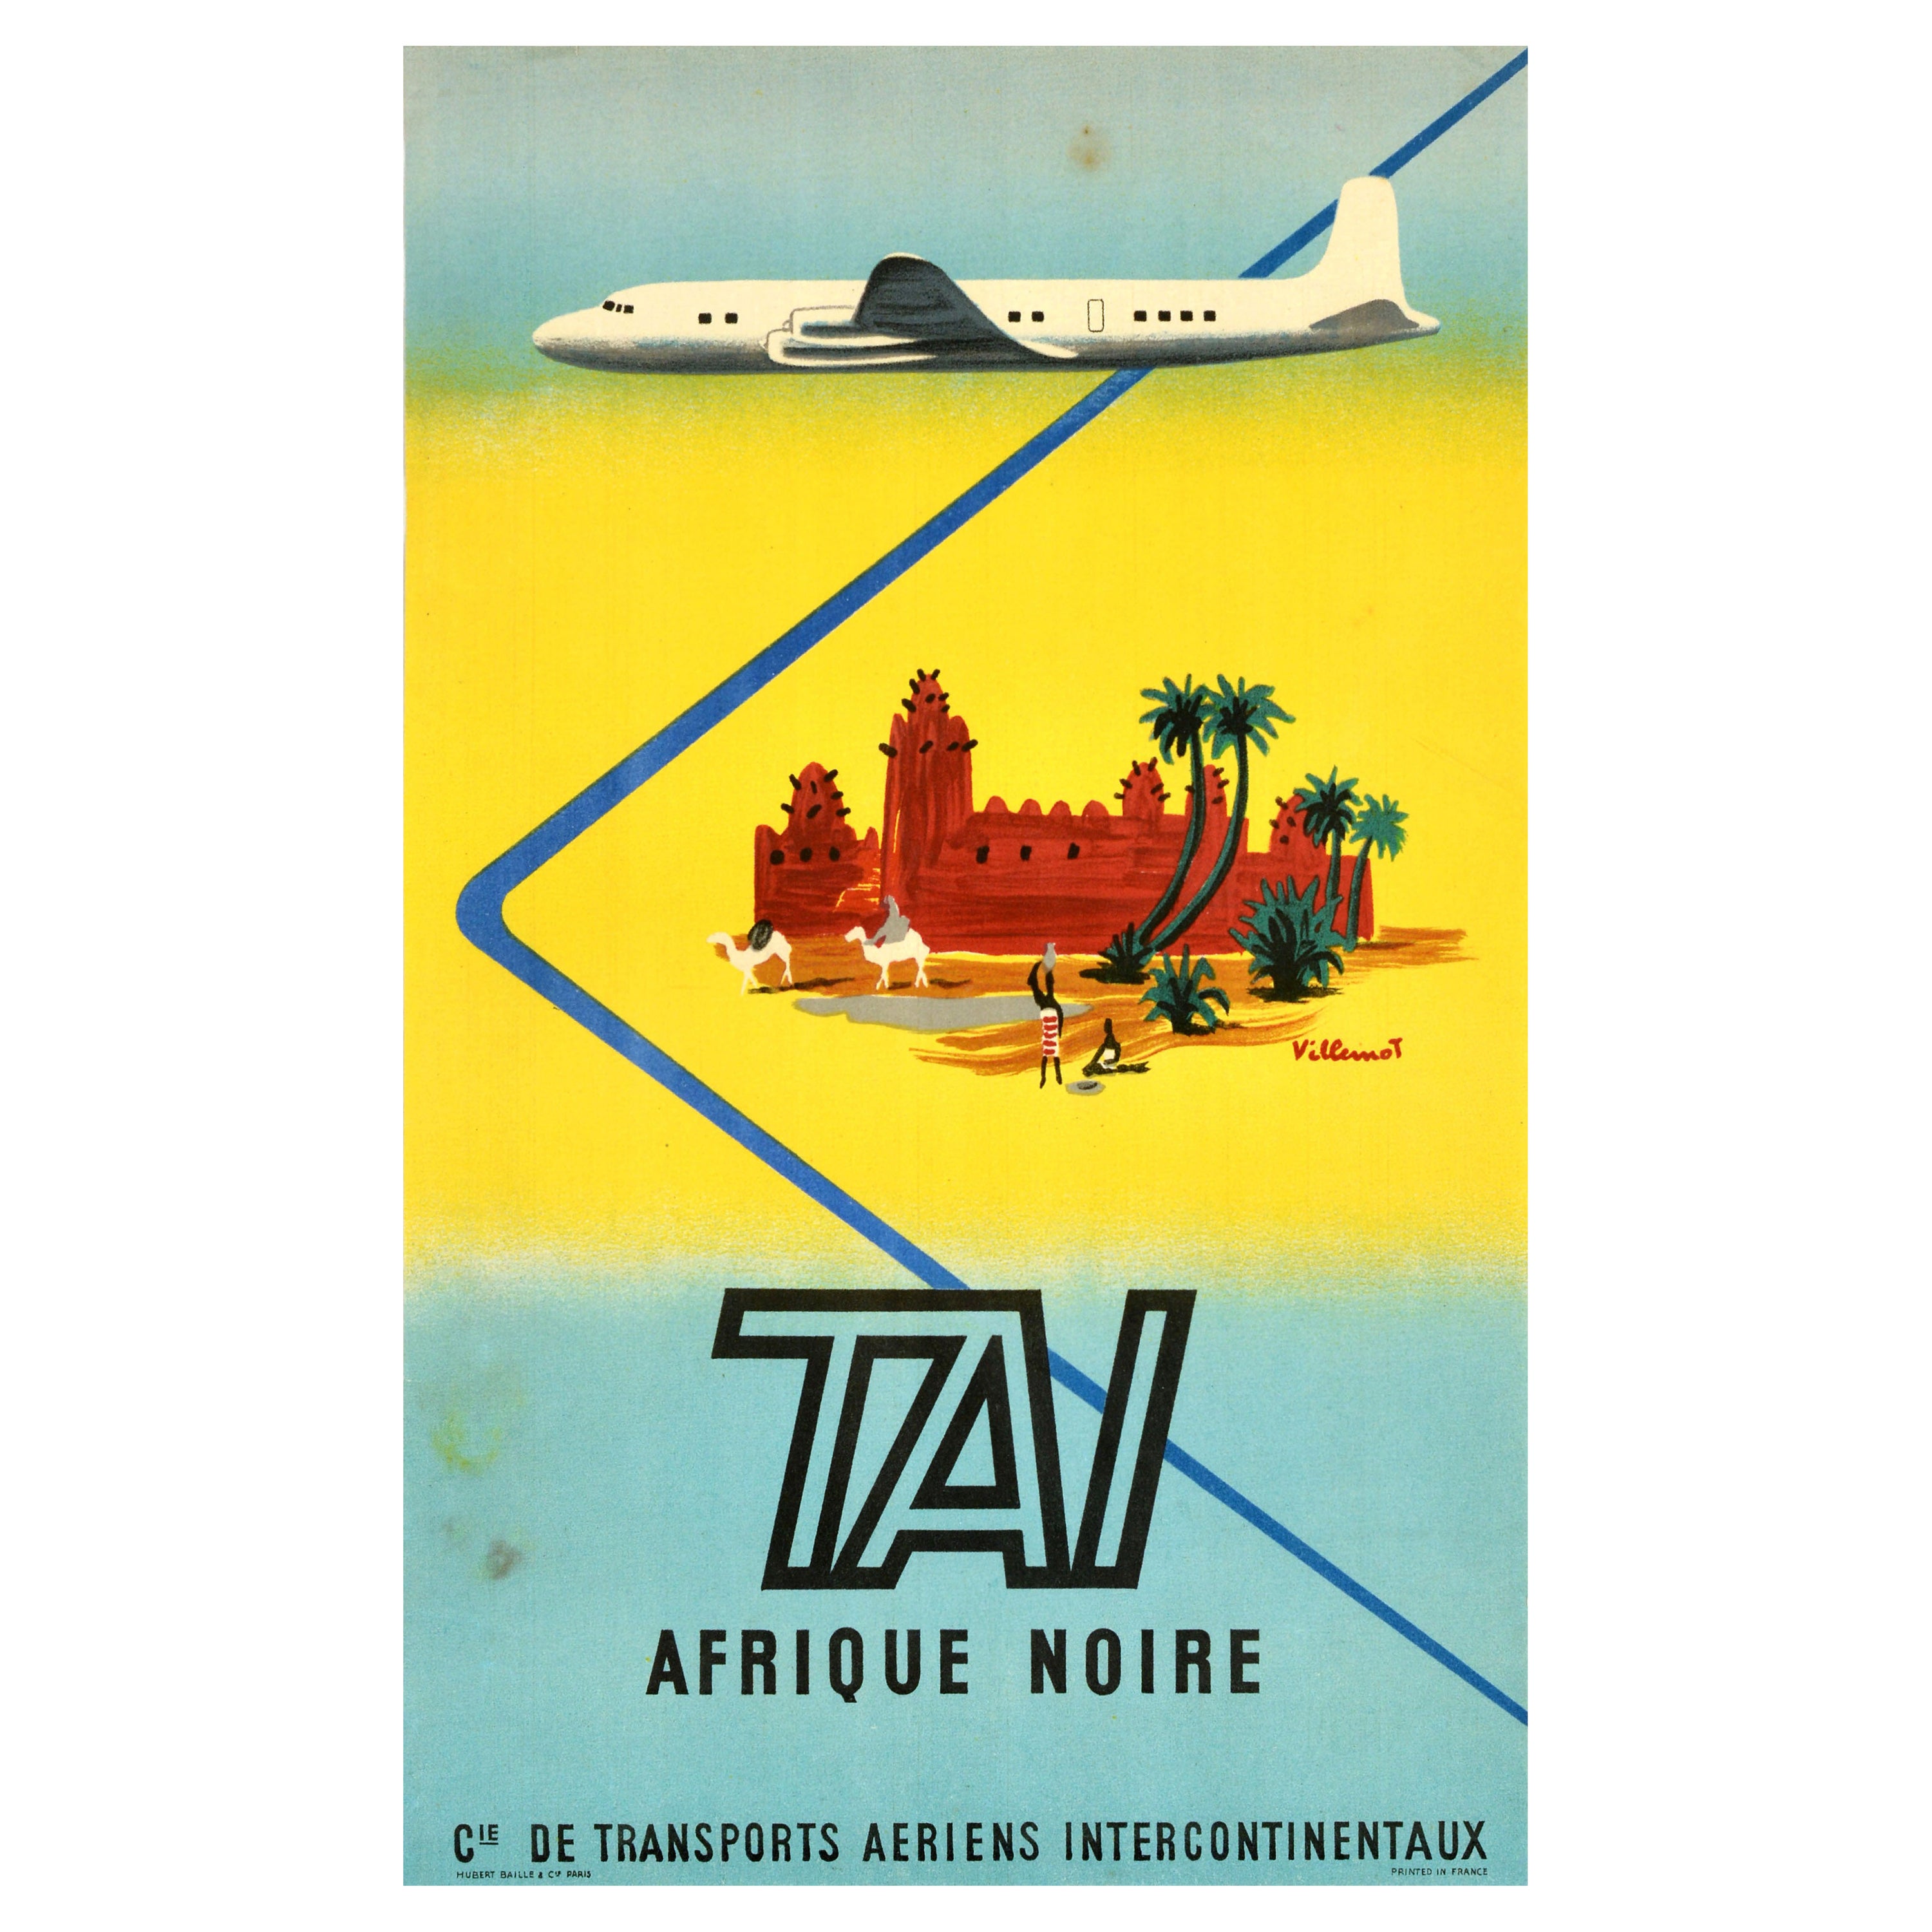 Original Vintage Travel Poster TAI Afrique Noire Sub Sahara Africa Villemot Art For Sale